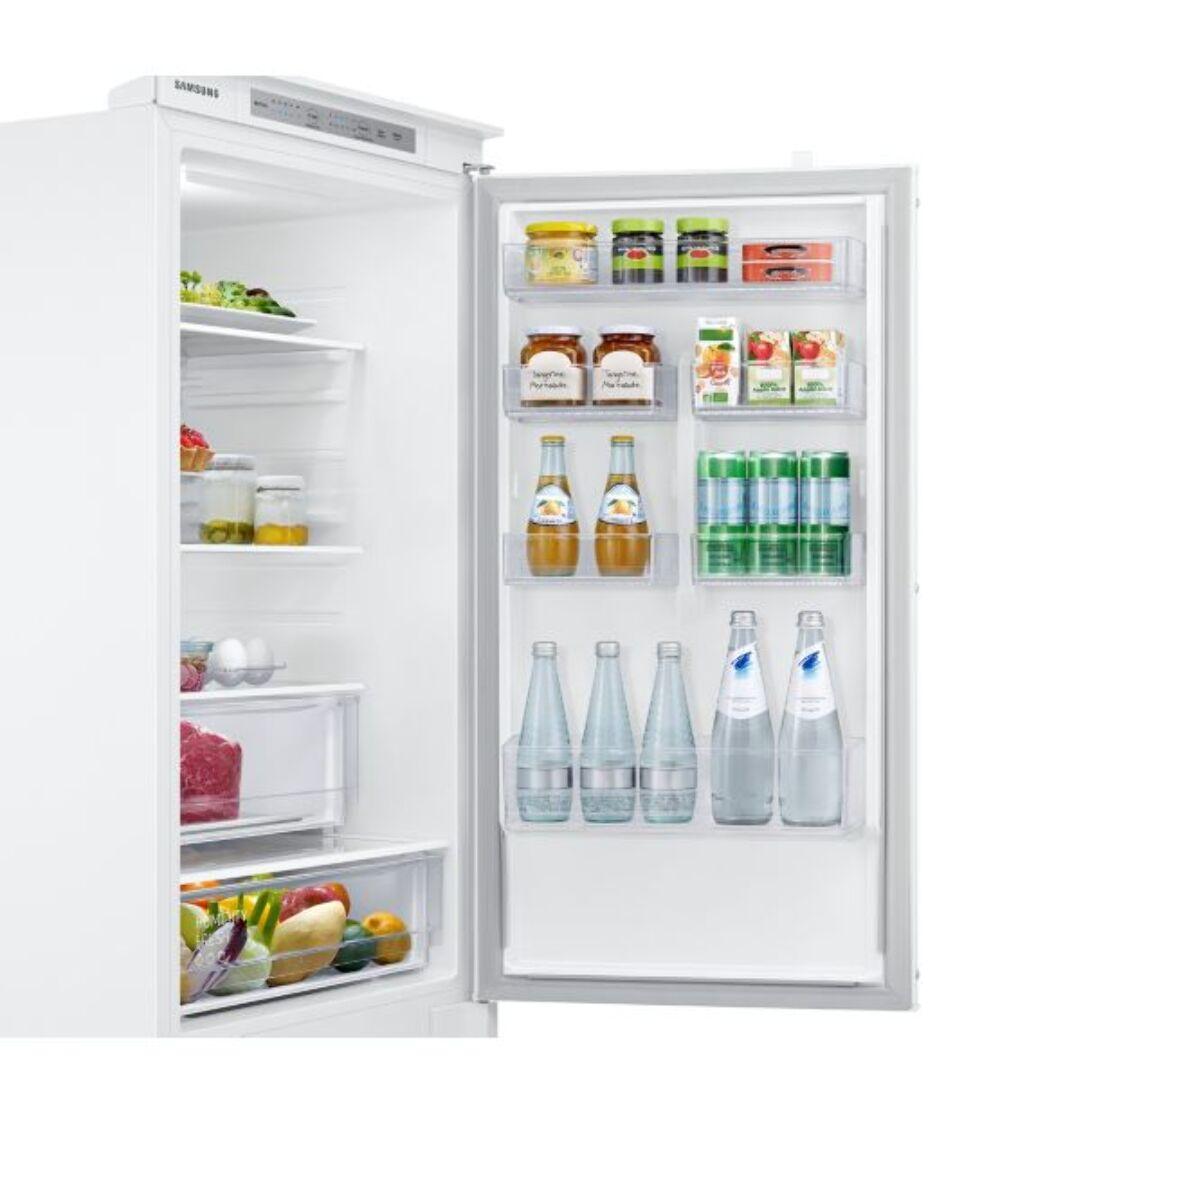 Réfrigérateur combiné encastrable SAMSUNG BRB26603EWW OptimalFresh